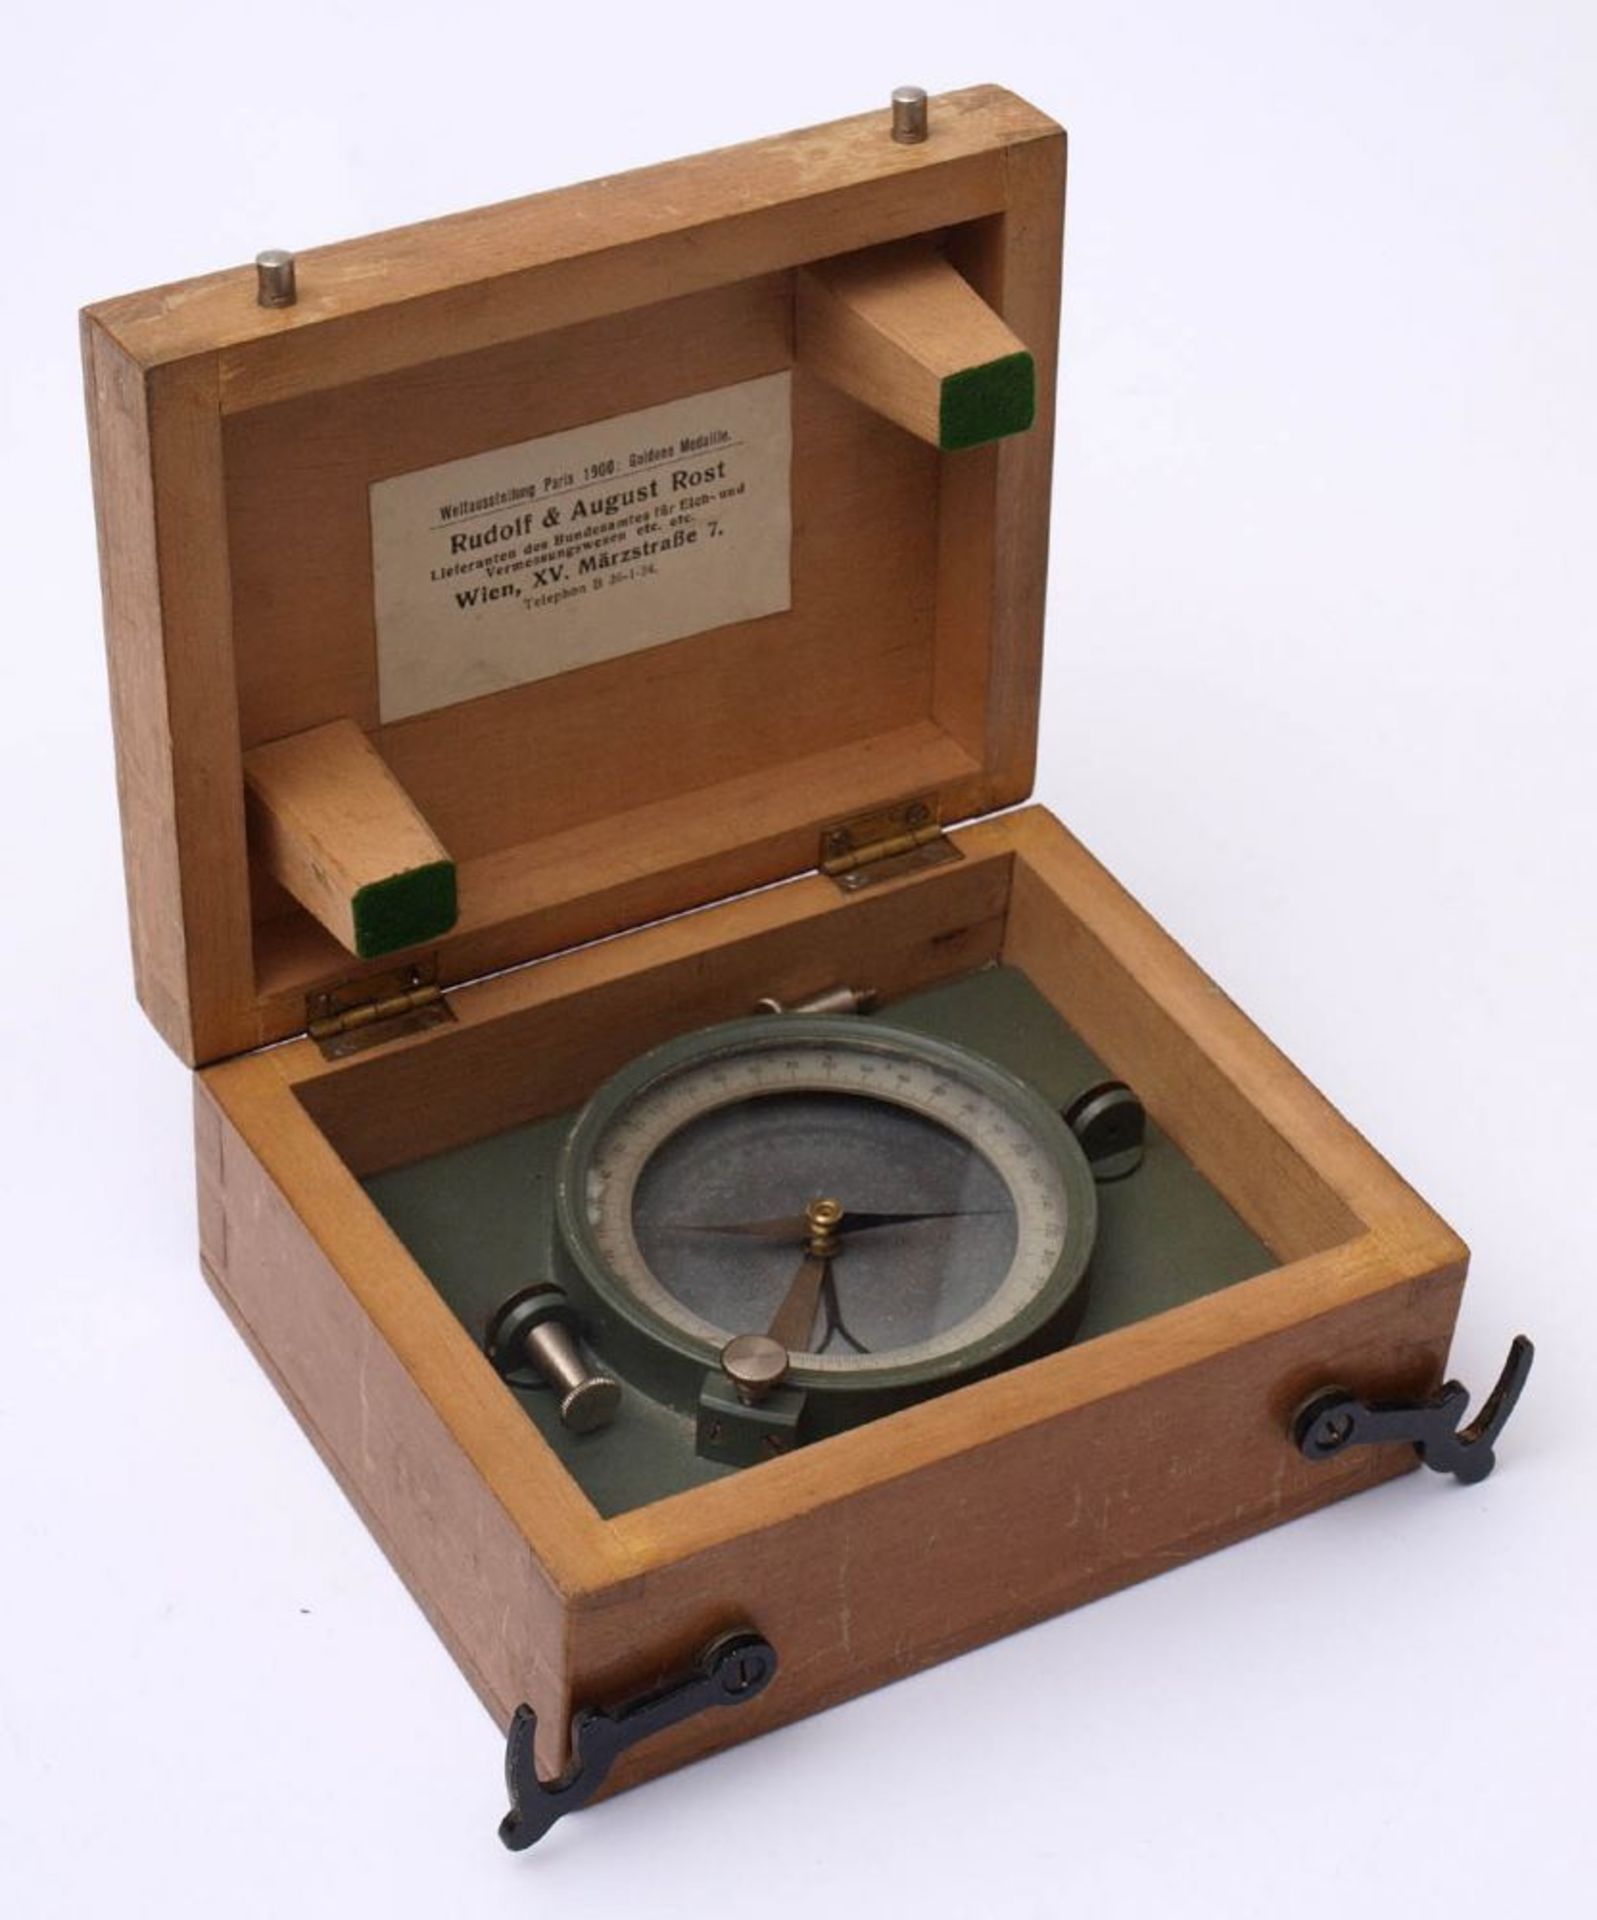 Kompass, Österreich Hersteller R. & A. Rost, Wien. Im originalen Holzkasten. 7x15,5x12,5cm.